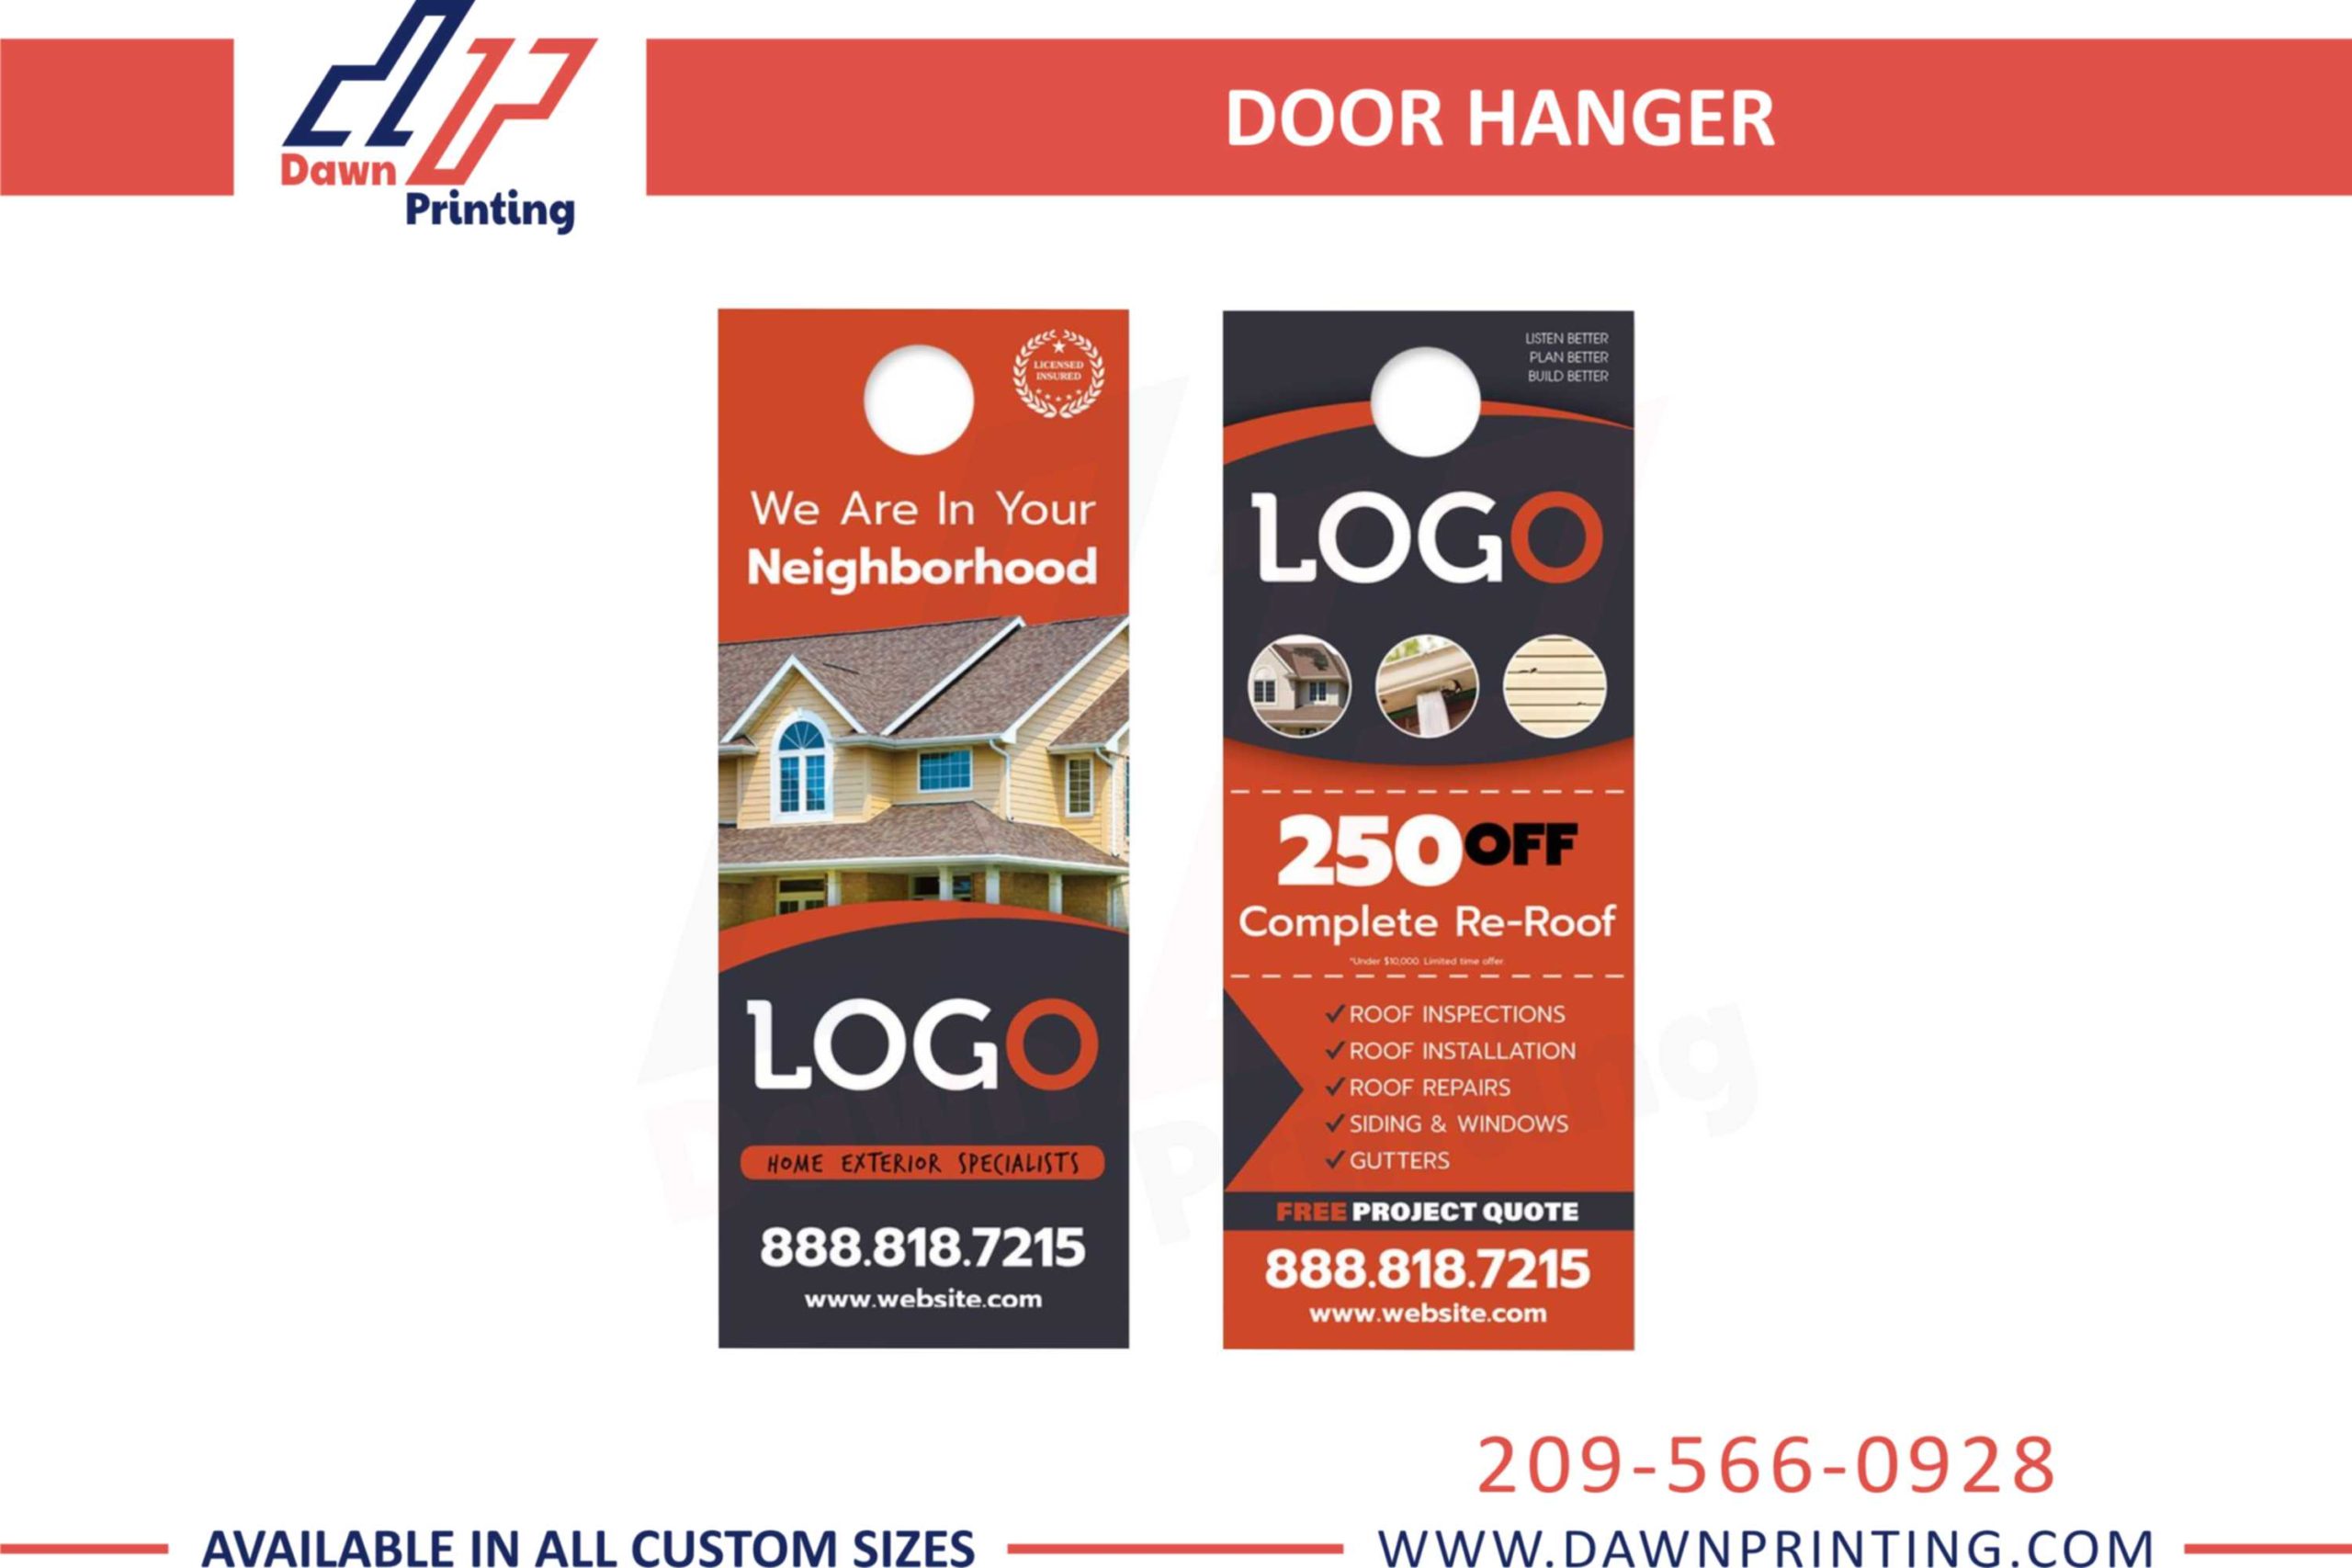 Creative Door Hangers With Logo - Dawn Printing